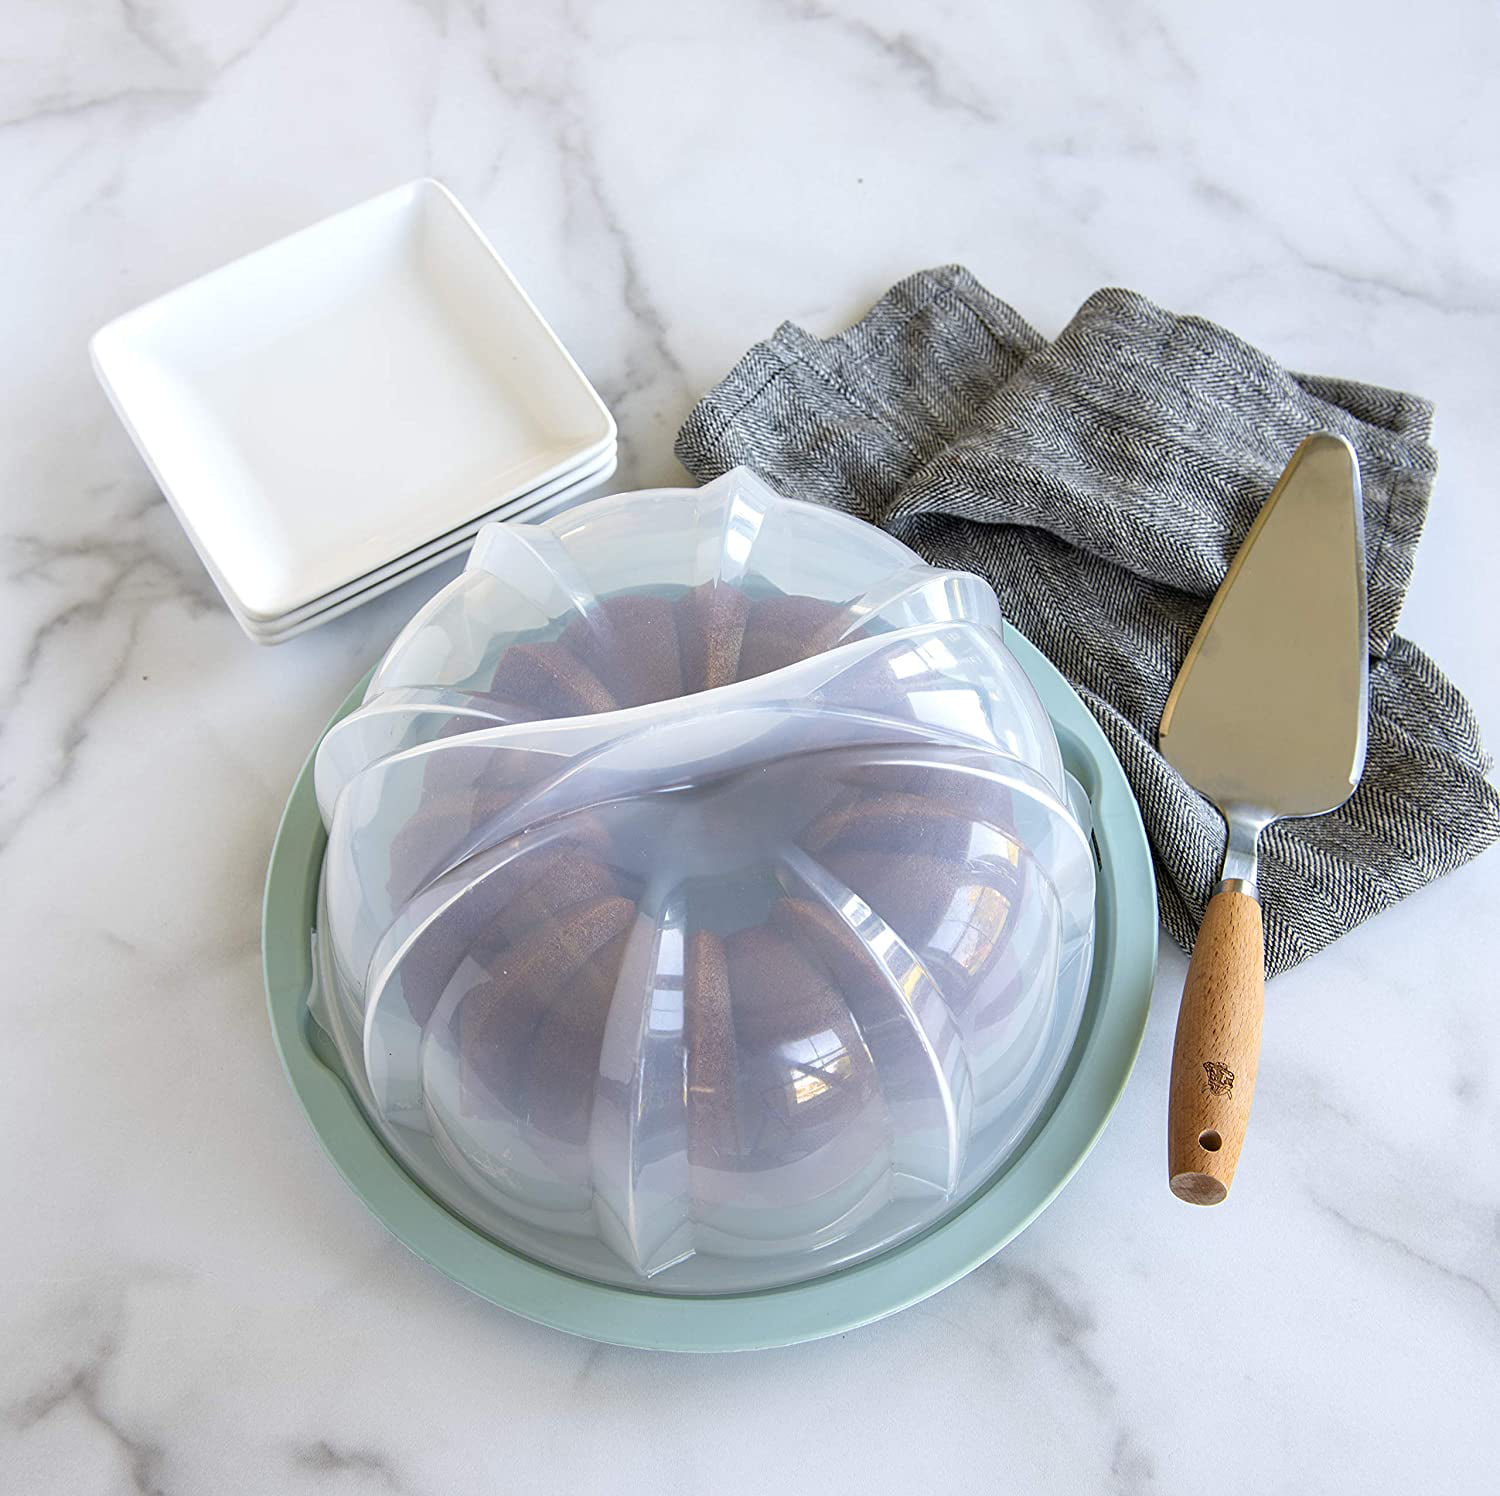 Nordic Ware Cake Keeper With Bundt Pan, Baking Pans